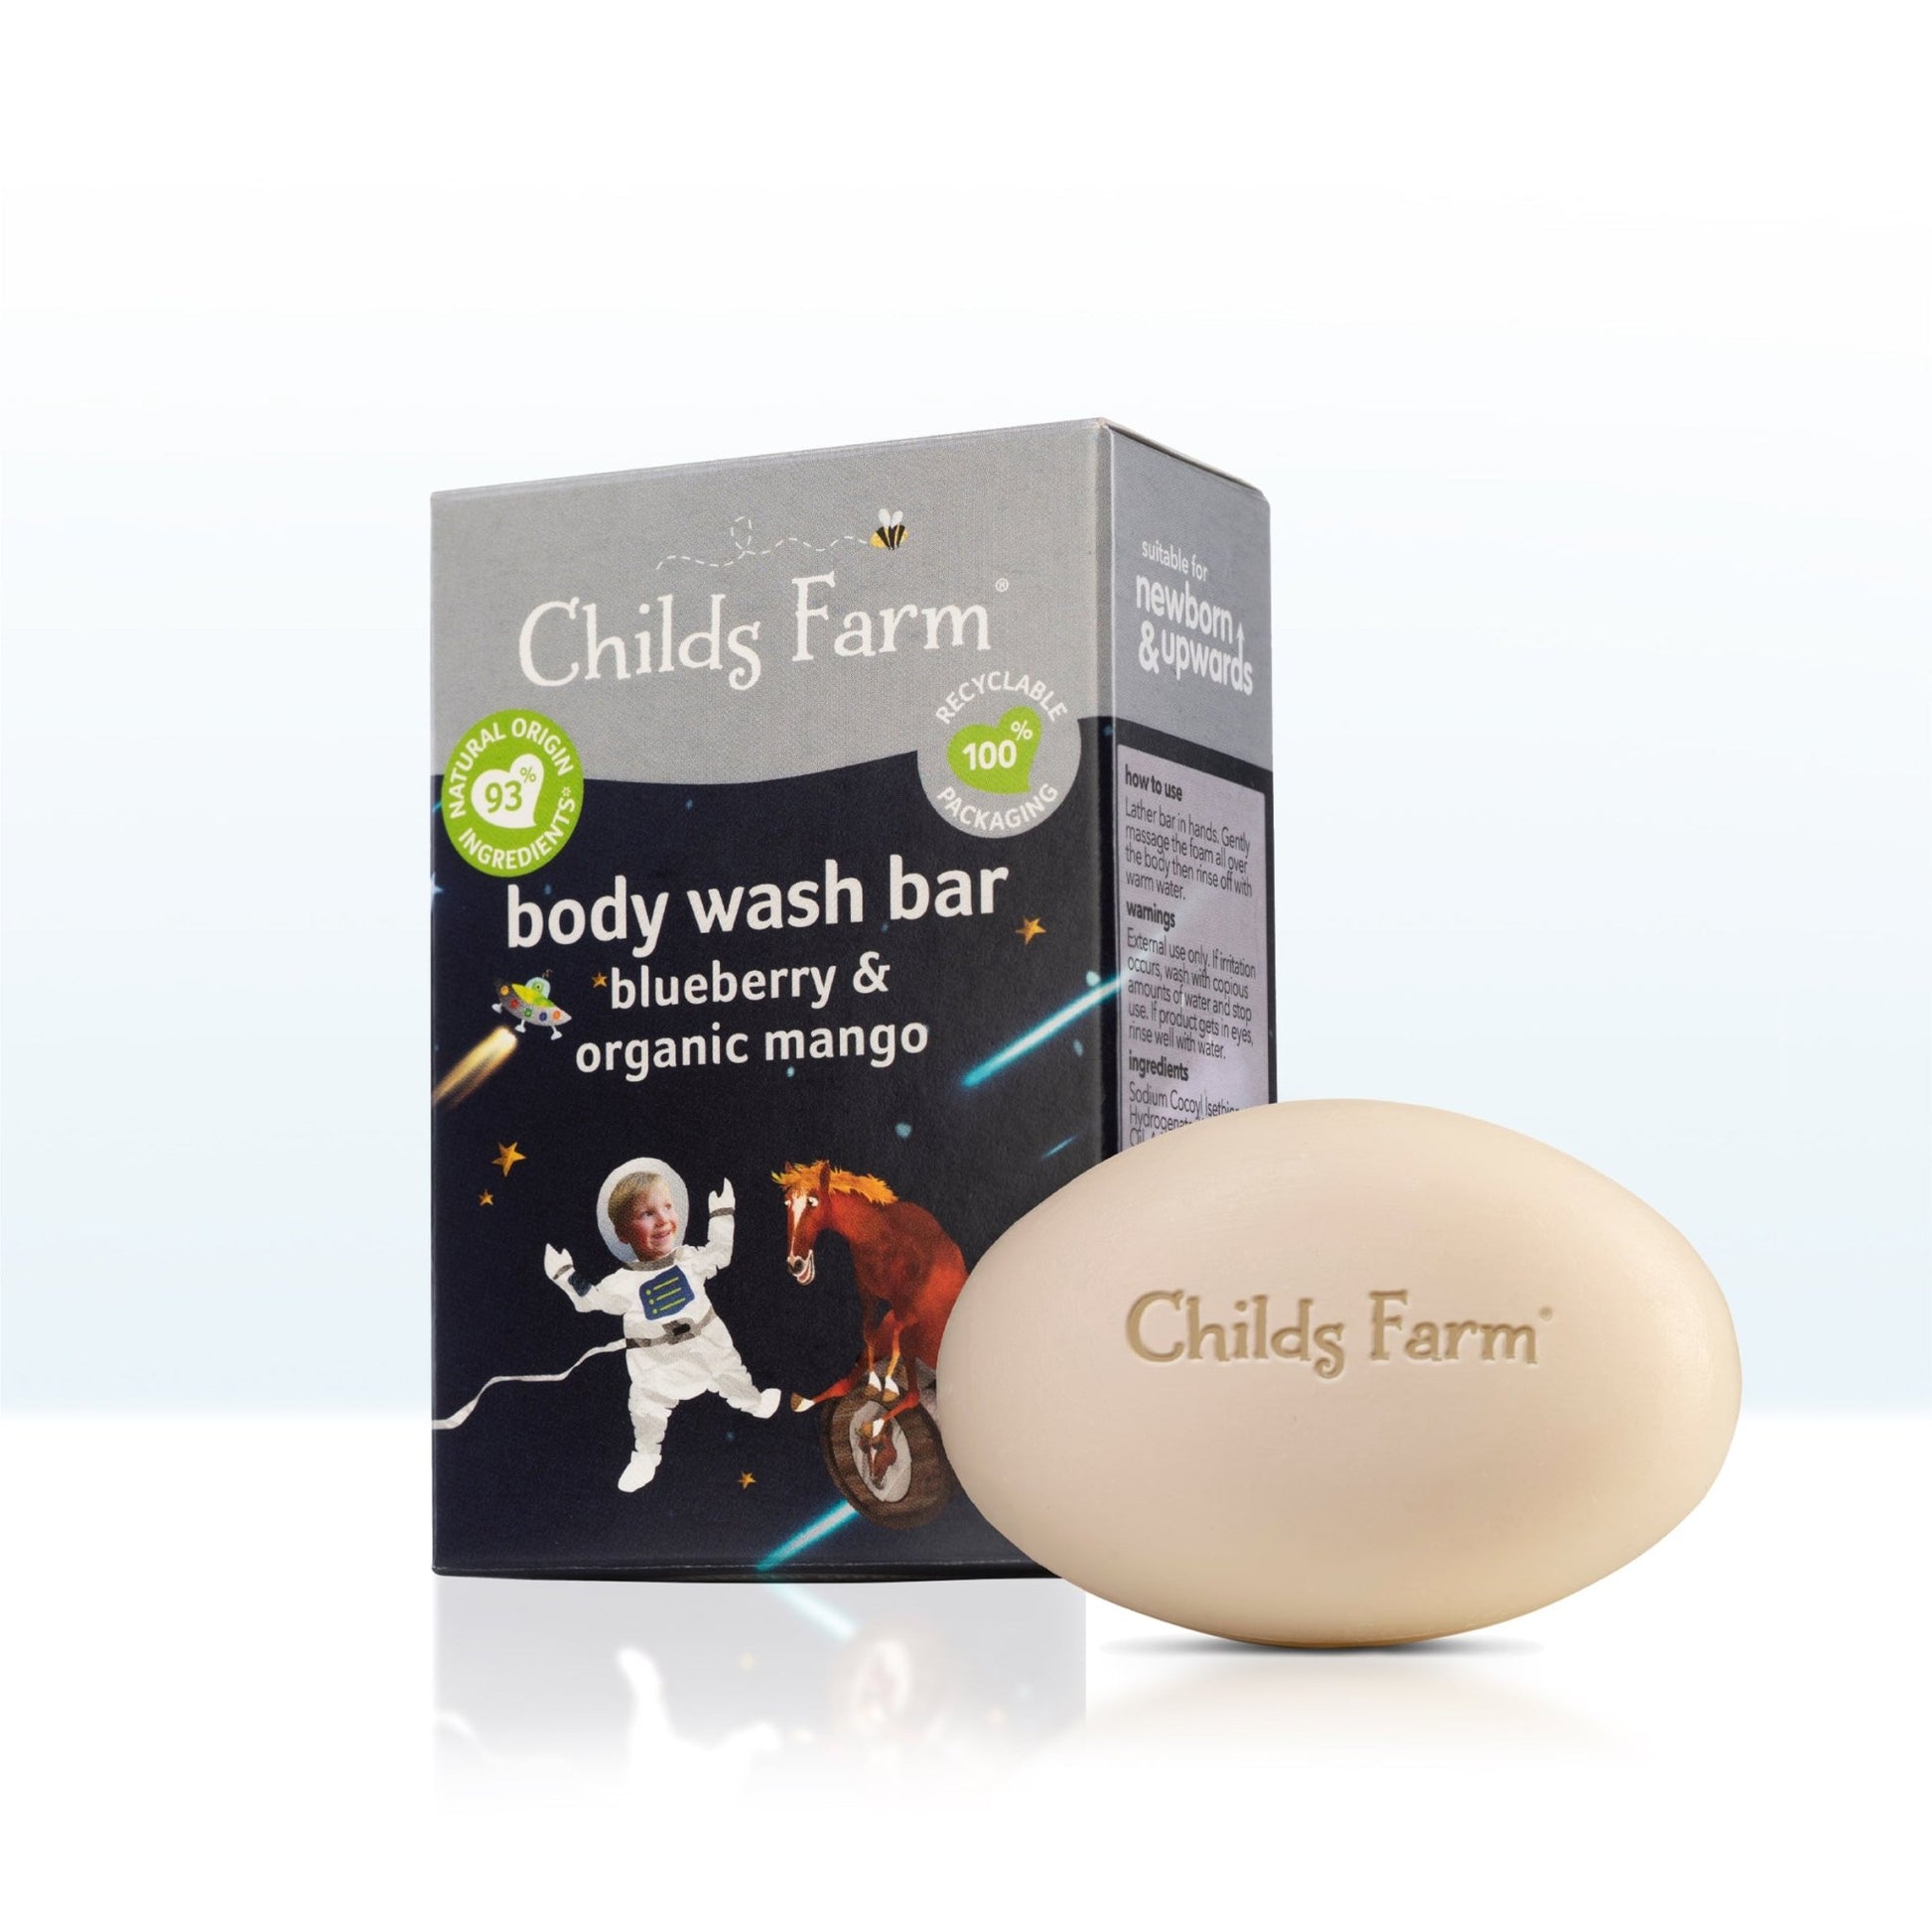 Childs Farm body wash bar blueberry & organic mango